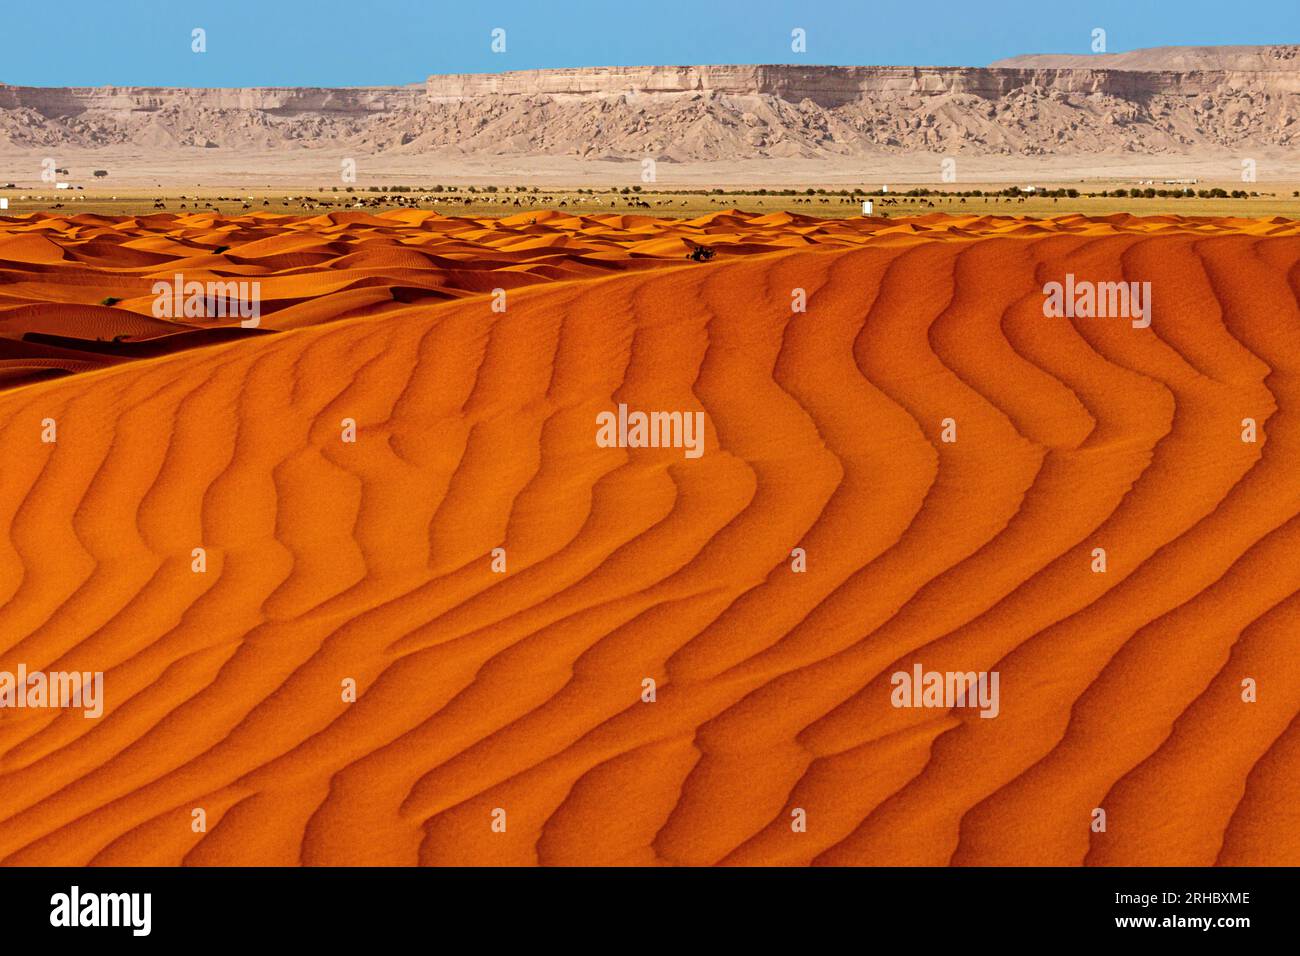 Dunes de sable orange dans le paysage désertique, Arabie Saoudite Banque D'Images